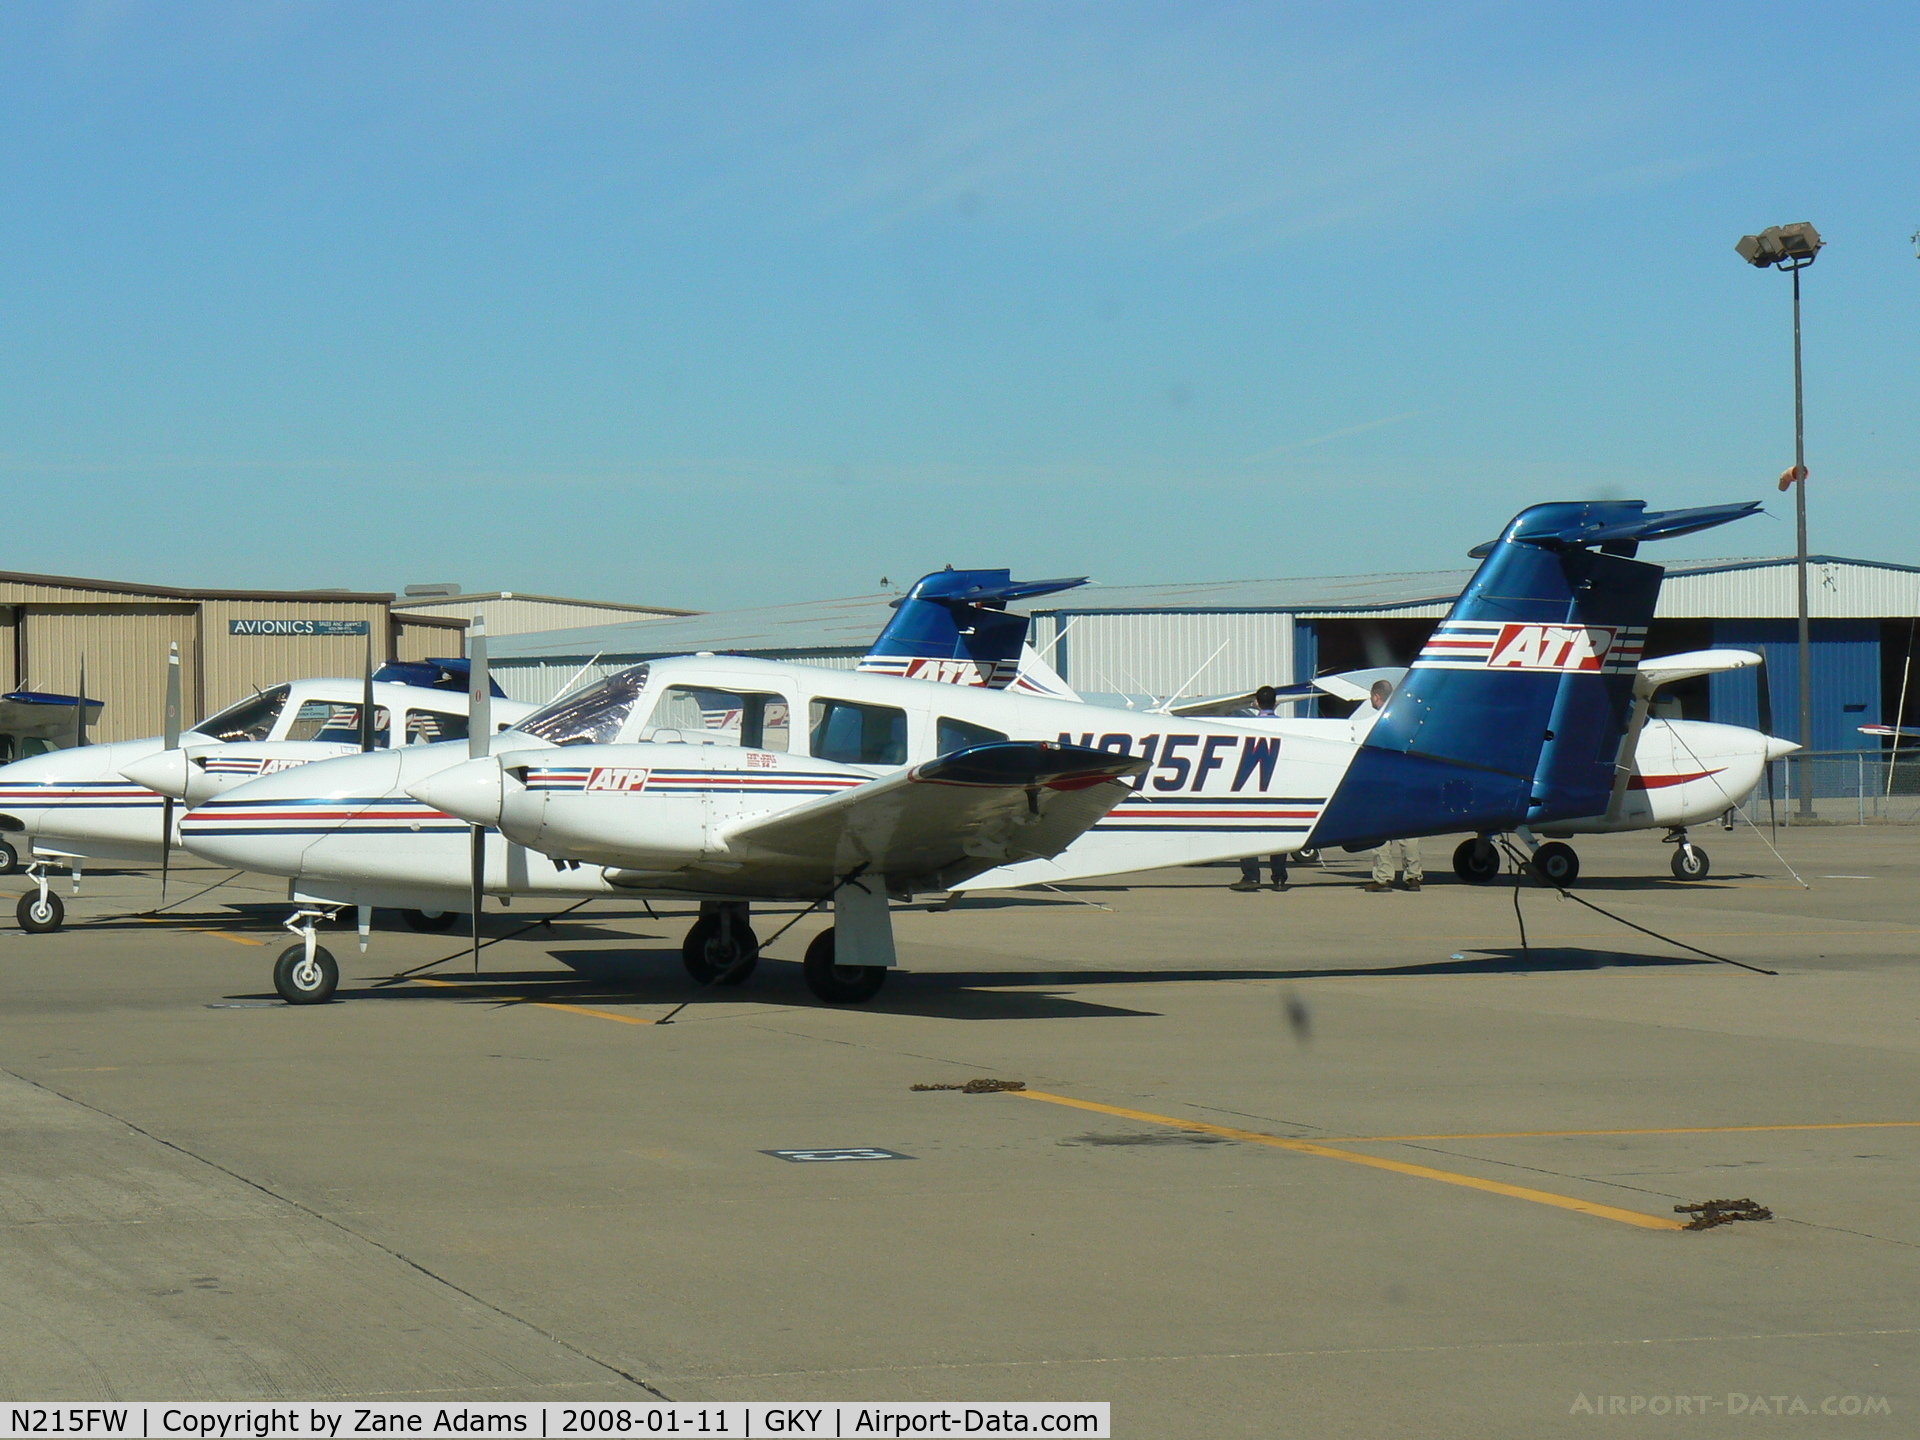 N215FW, Piper PA-44-180 Seminole C/N 447995056, ATP Flight Training At Arlington Municipal